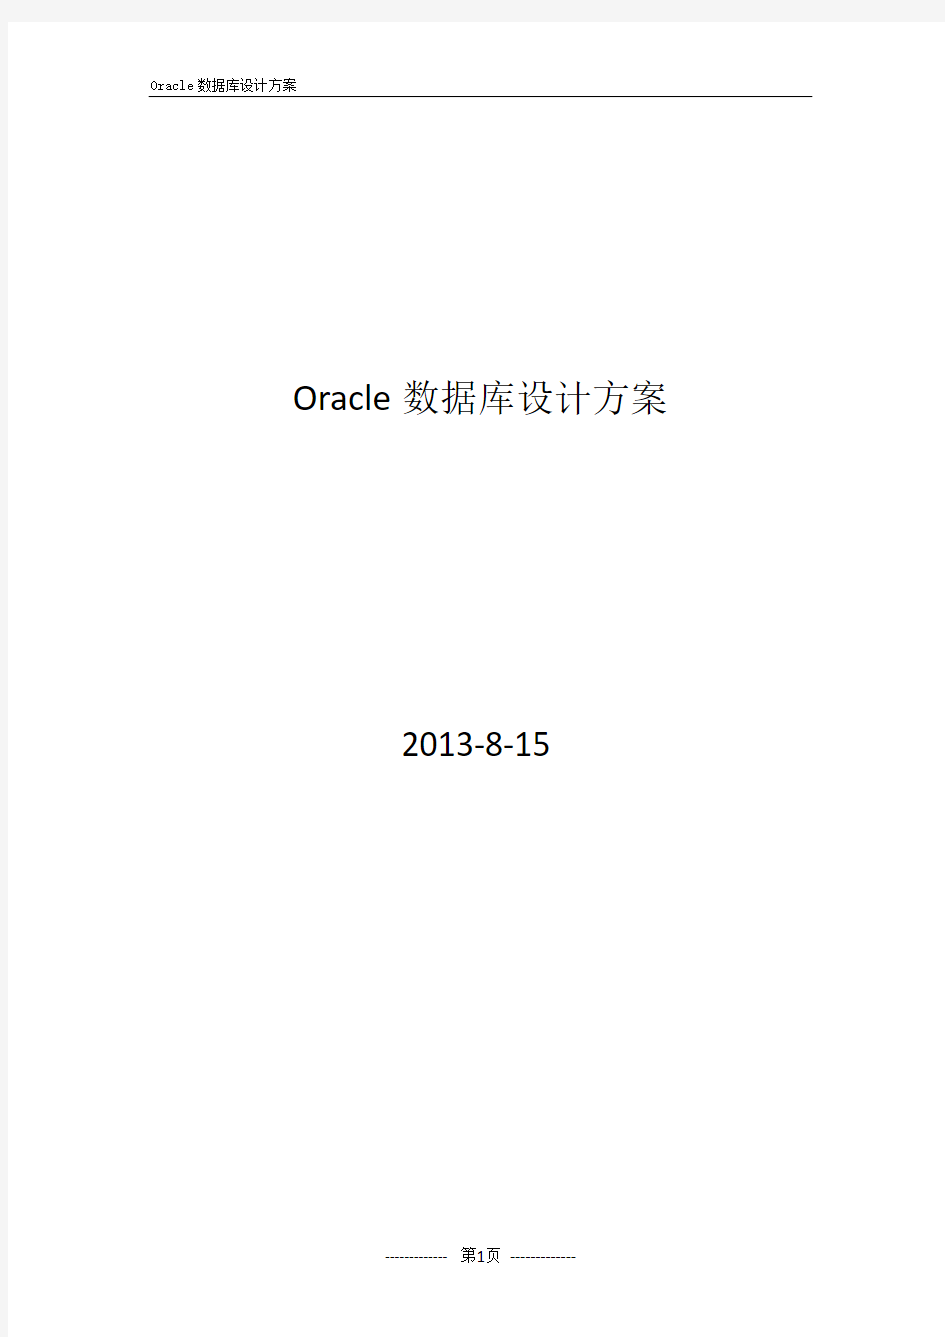 Oracle 数据库方案(RAC)